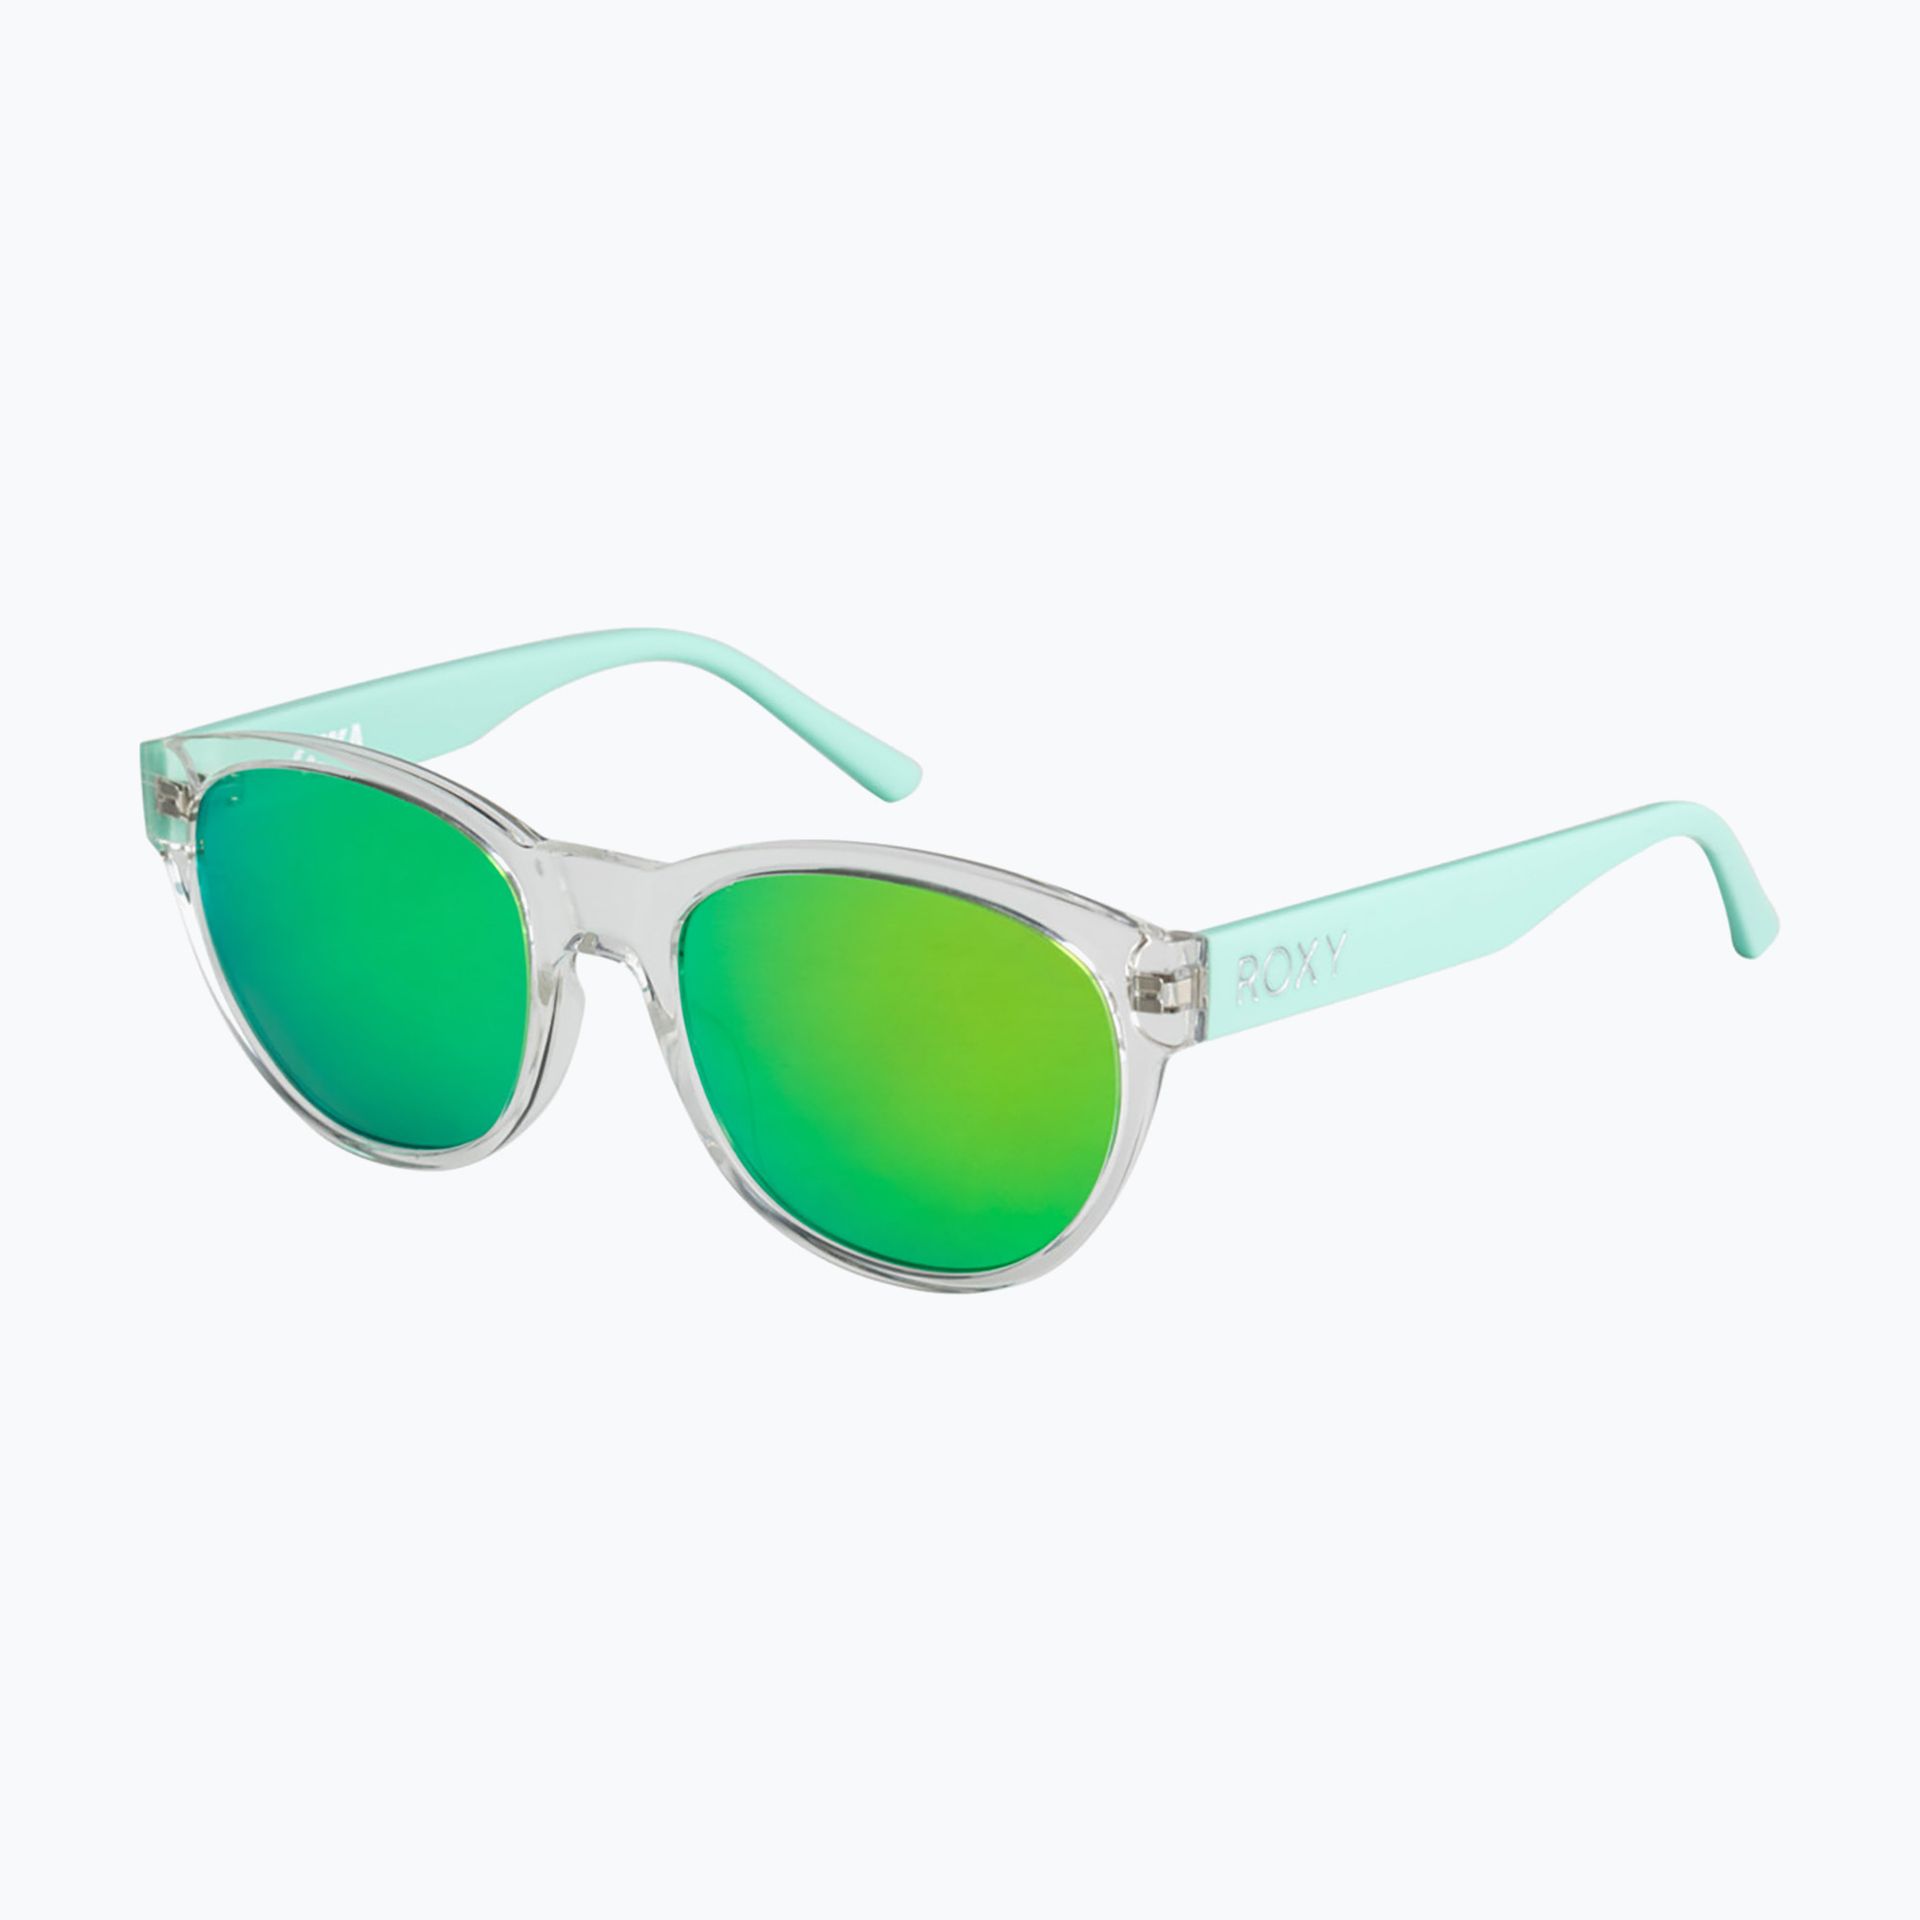 Okulary przeciwsłoneczne dziecięce ROXY Tika clear/ml turquoise | WYSYŁKA W 24H | 30 DNI NA ZWROT